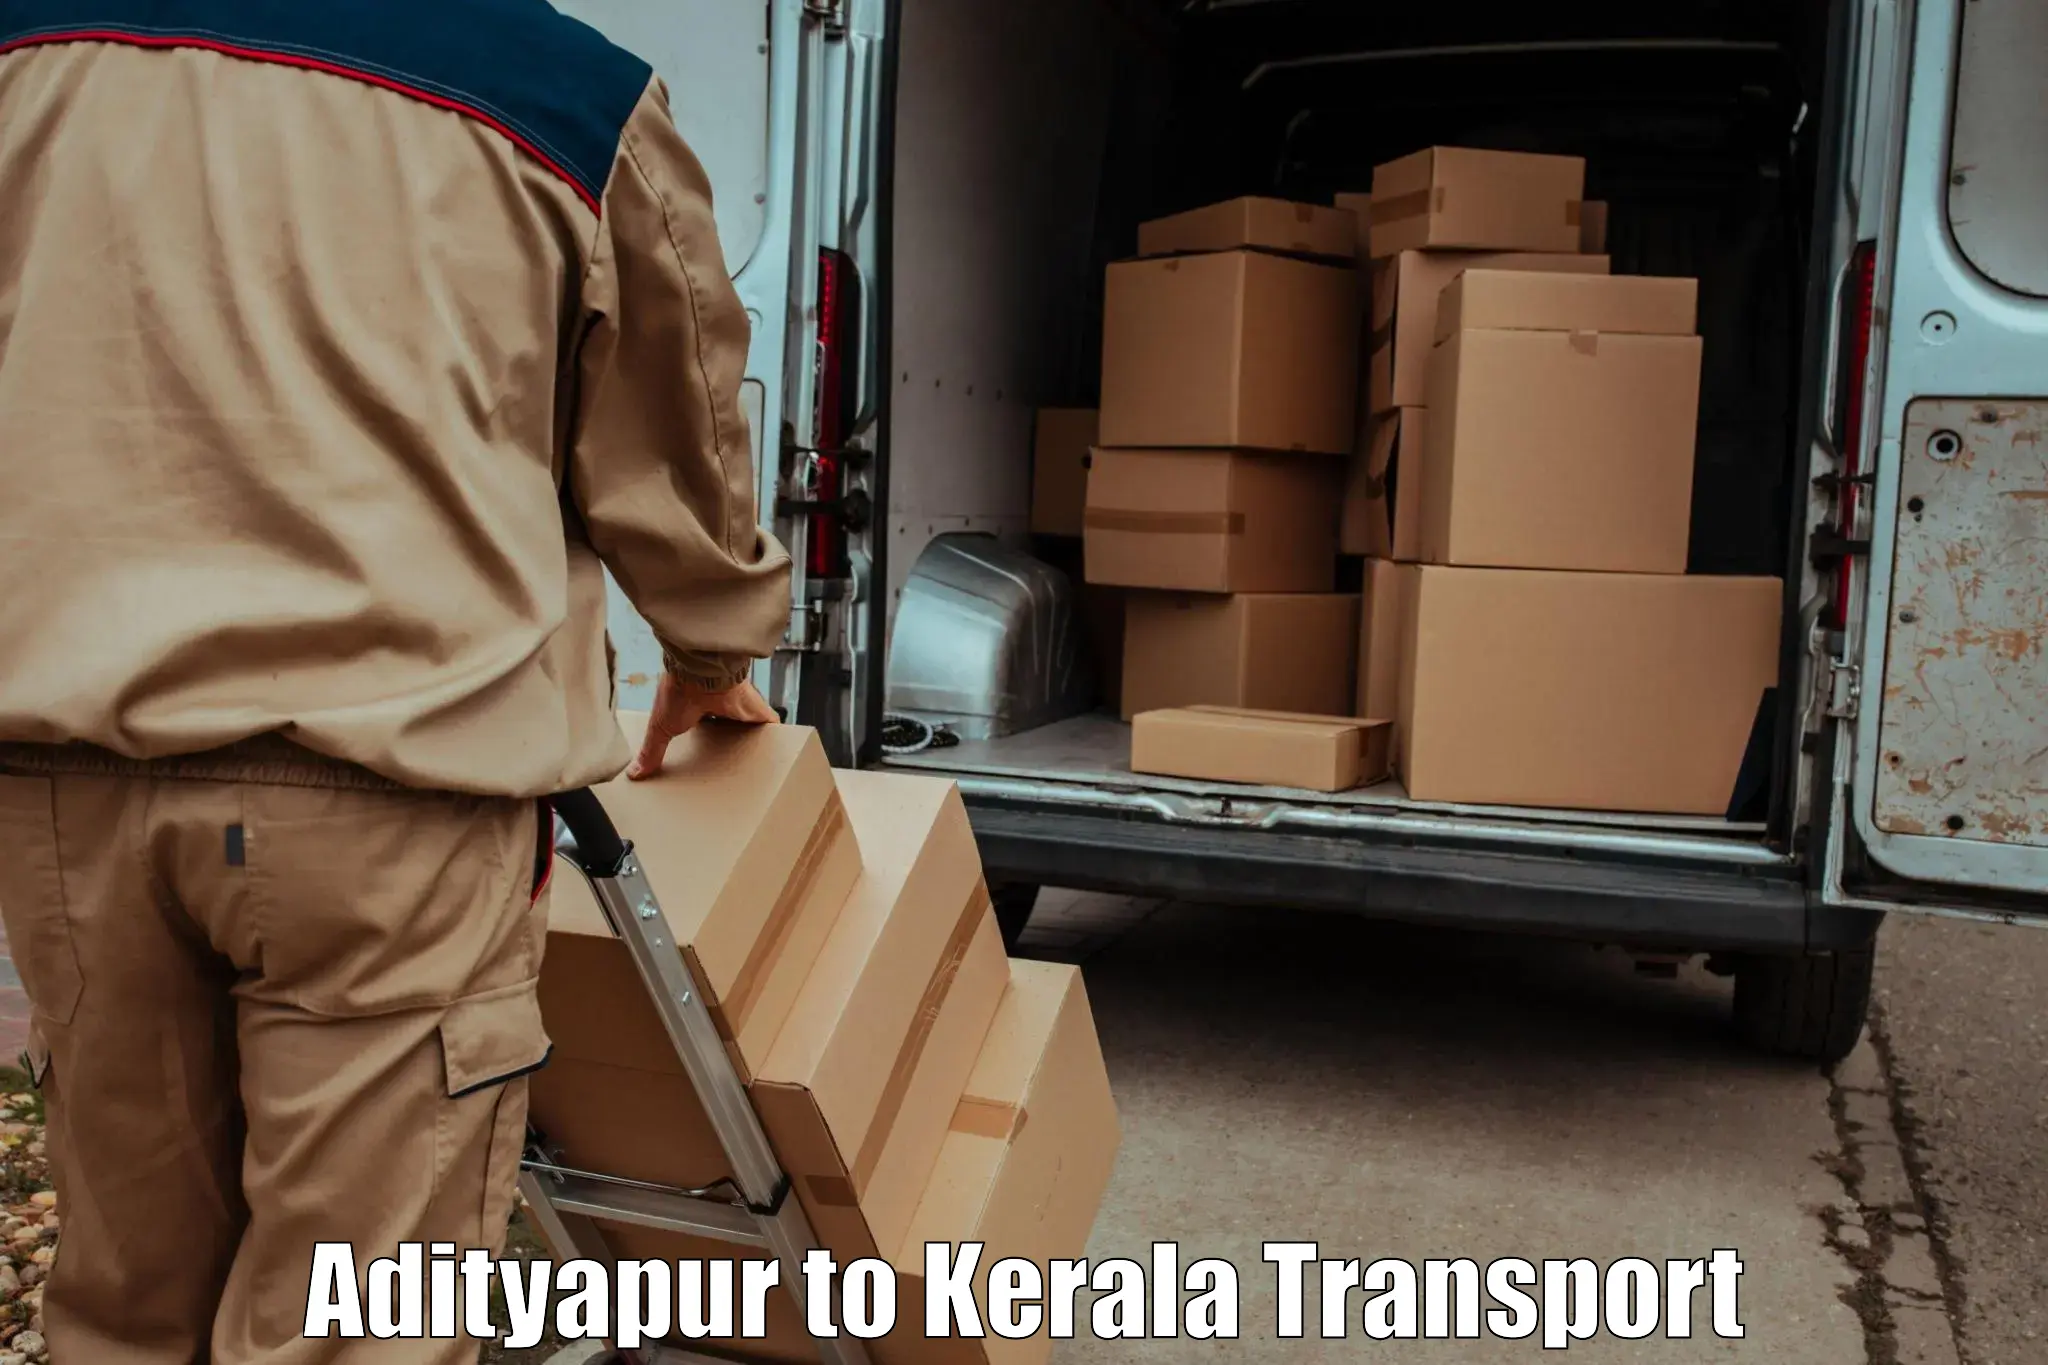 Shipping partner Adityapur to Kochi